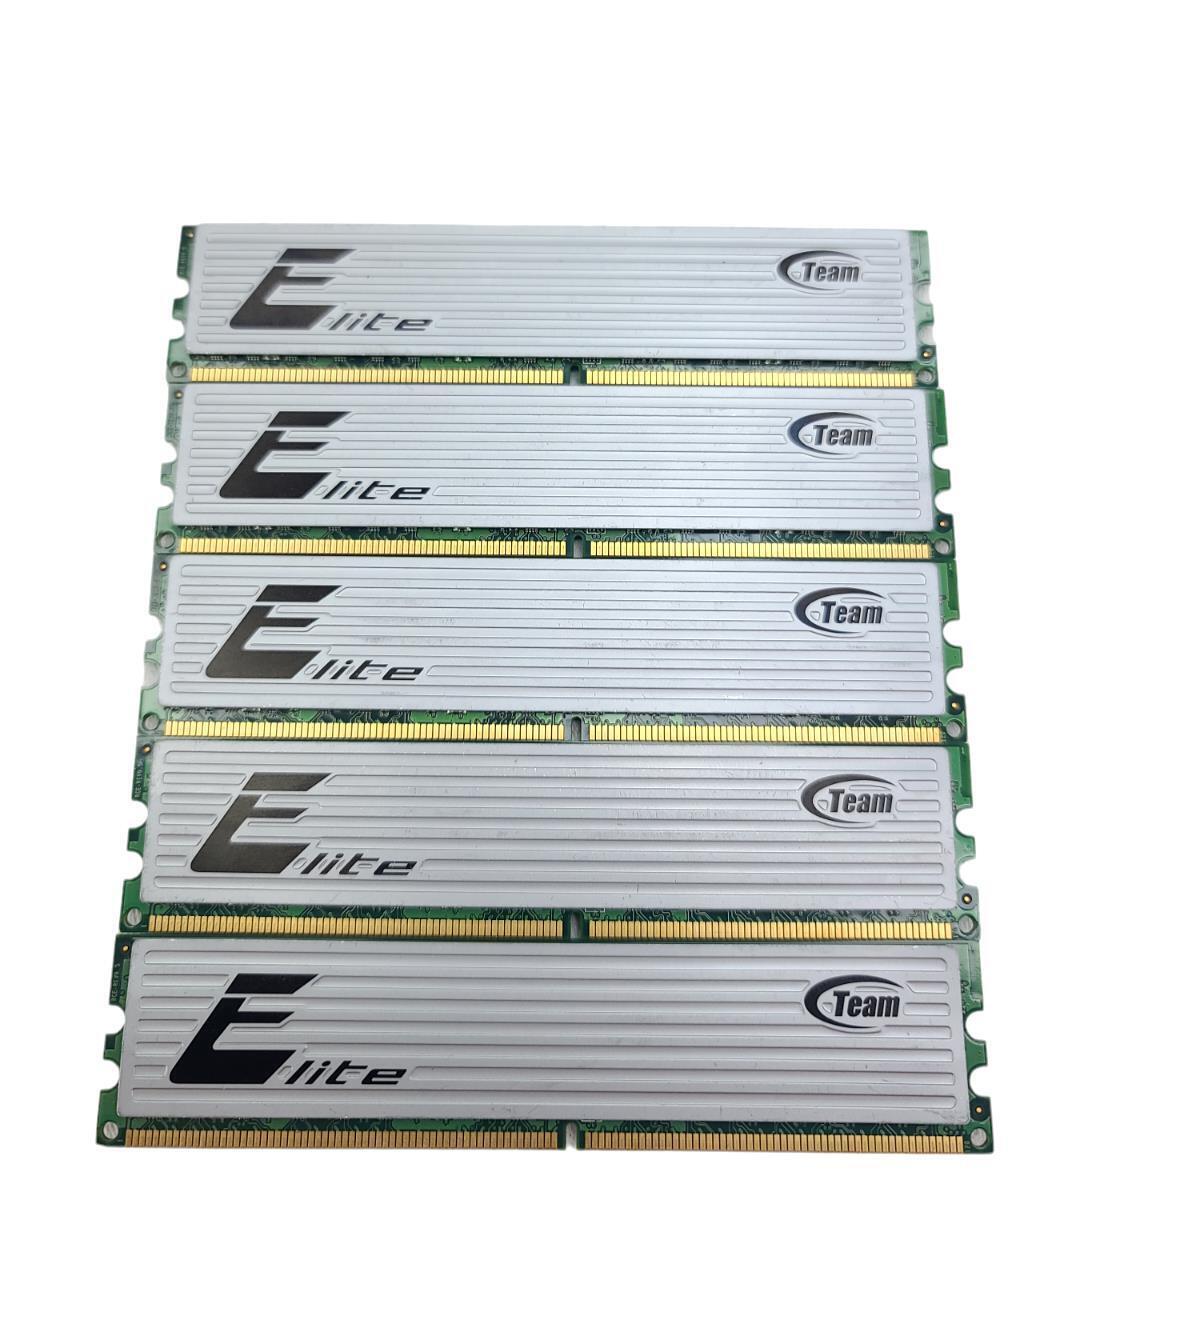 Lot of 5 Team Group INC Elite 2GB (1x2GB) DDR2 TEDD2048M800H 800Mhz